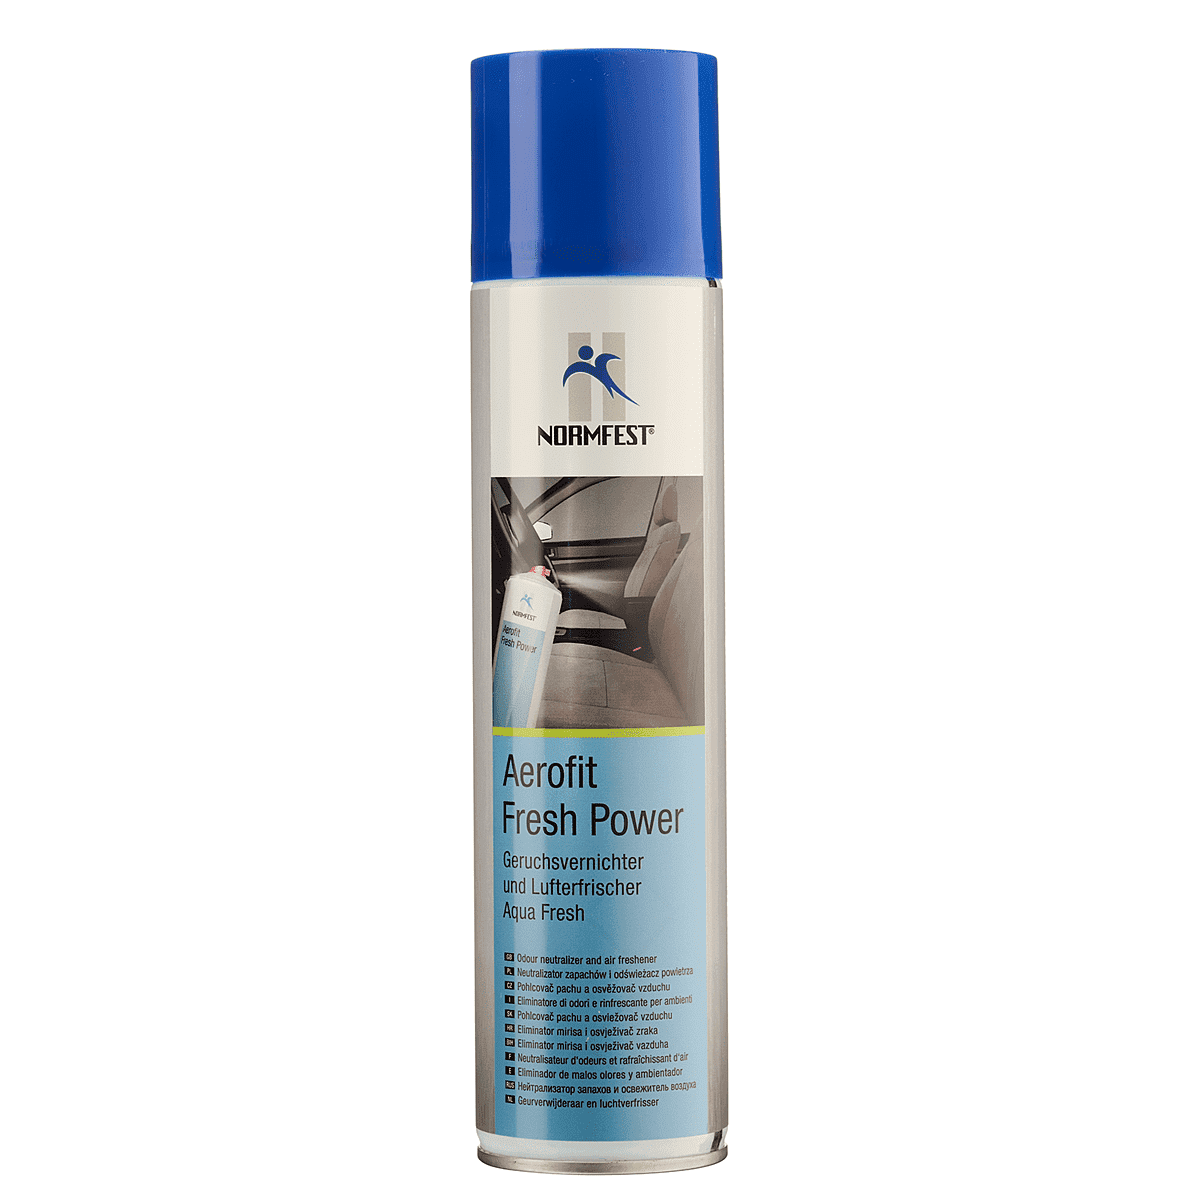 Normfest Aerofit Geruchsvernichter und Lufterfrischer Coolwaterduft 400 ml